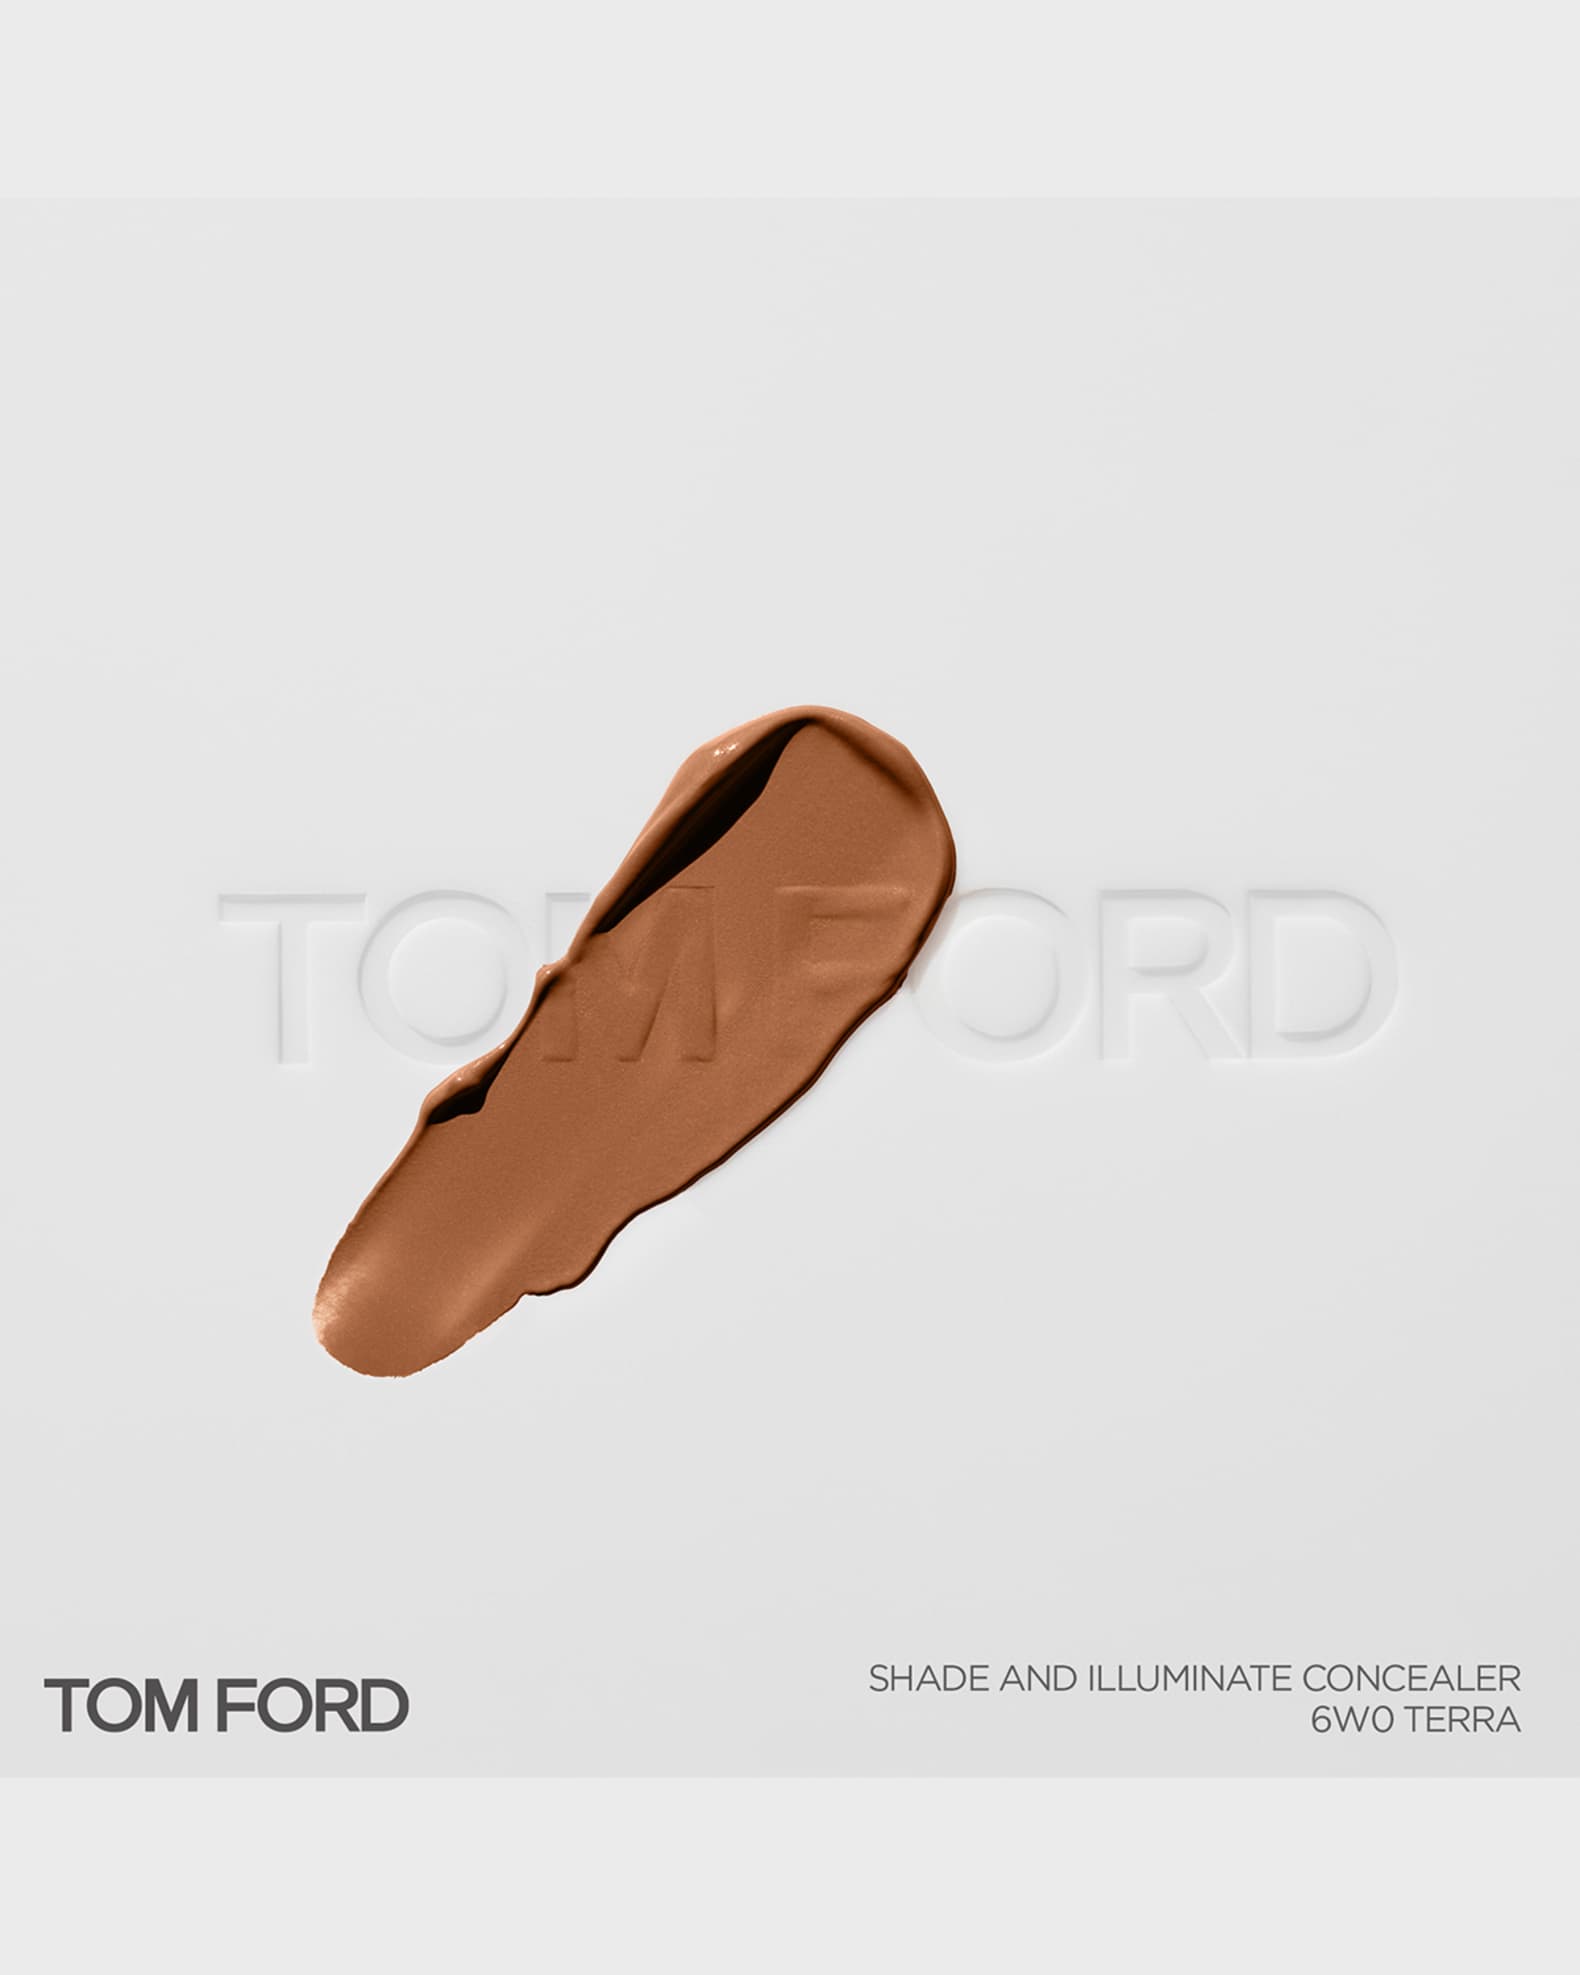 TOM FORD Shade & Illuminate Concealer | Neiman Marcus